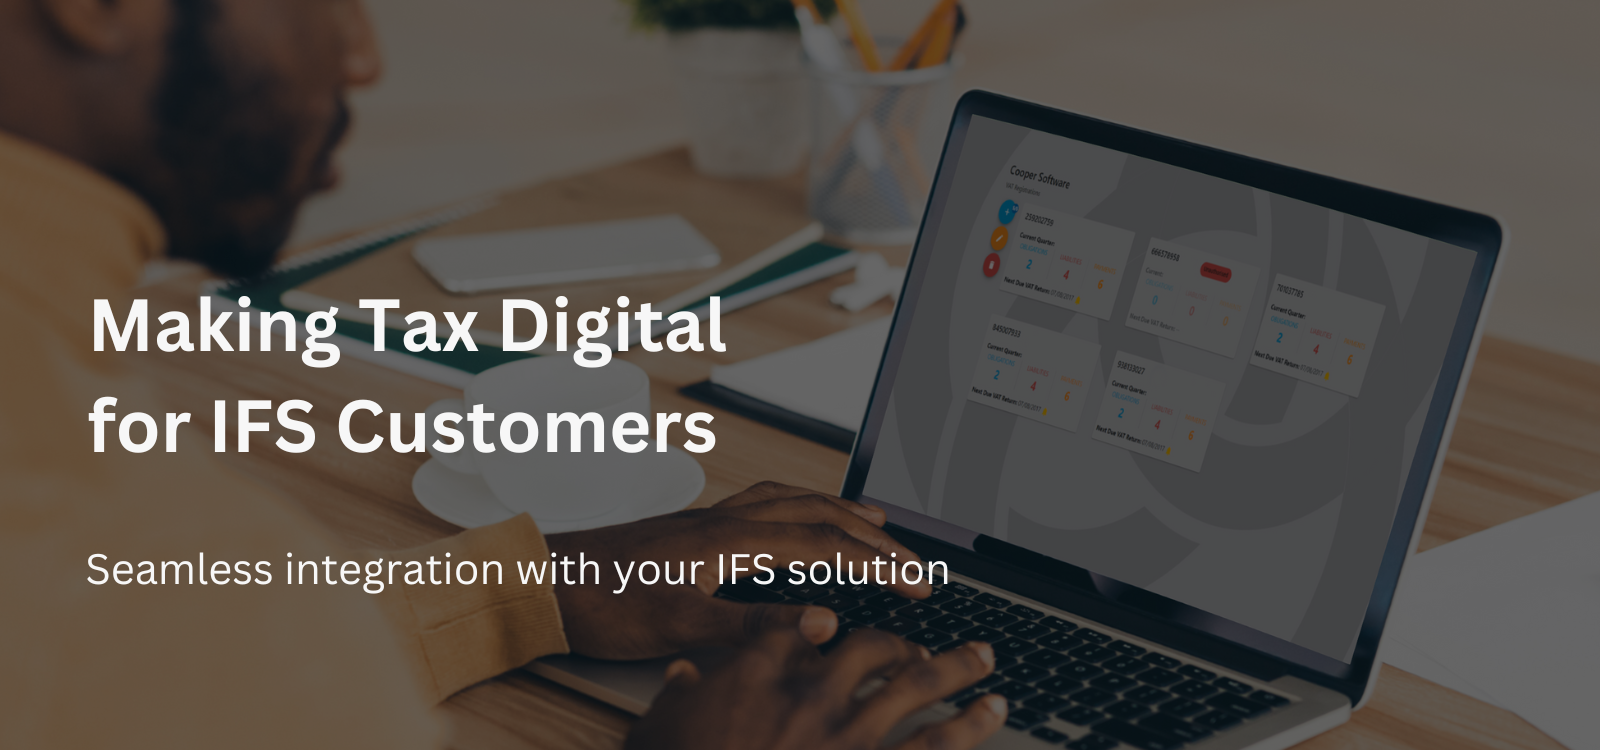 Making Tax Digital for IFS Customers